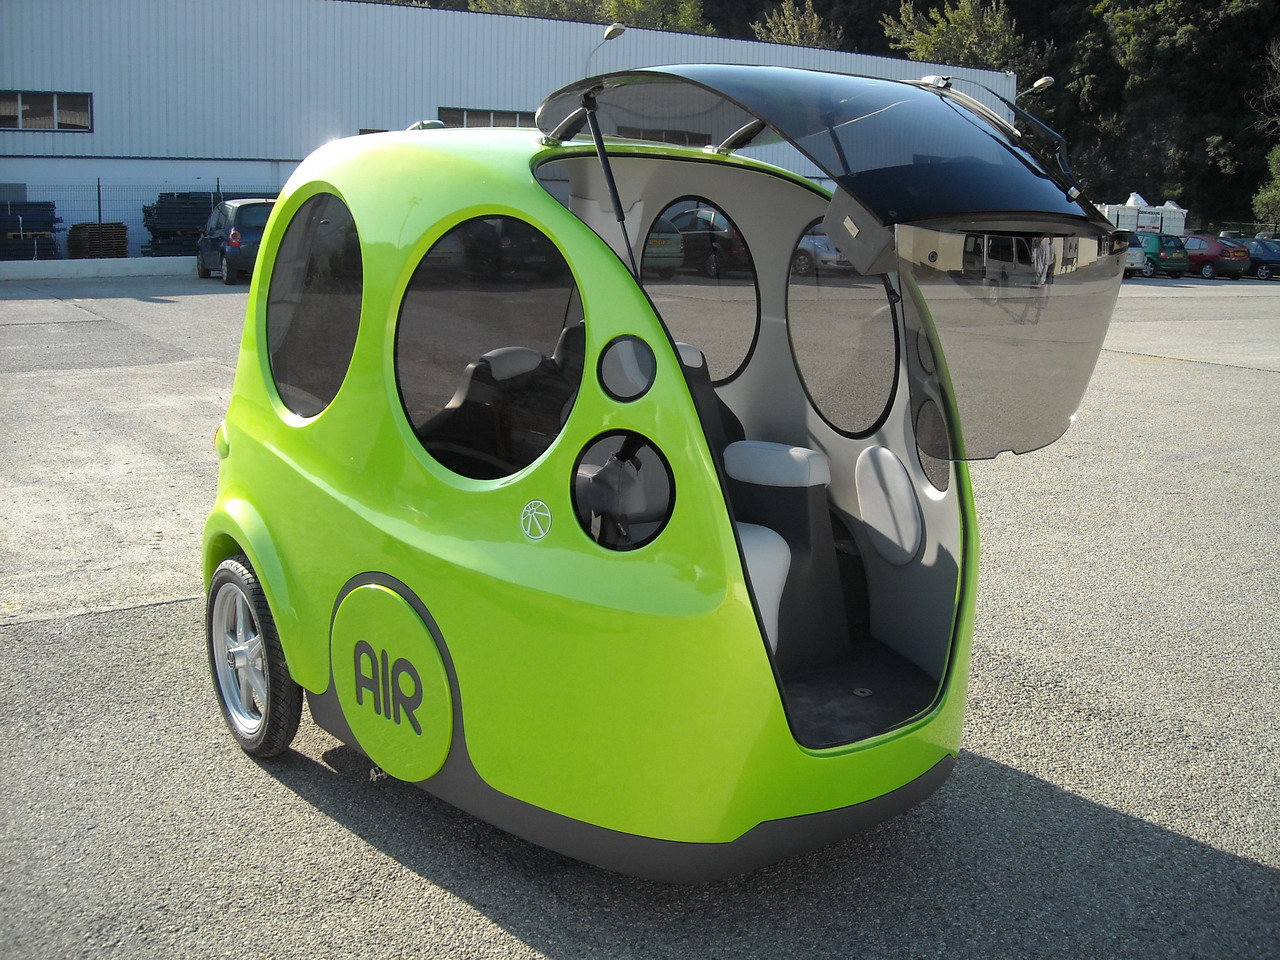 Пневматический авто автомобиль tata motors airpod air pod photo фото на сжатом воздухе движение двигатель